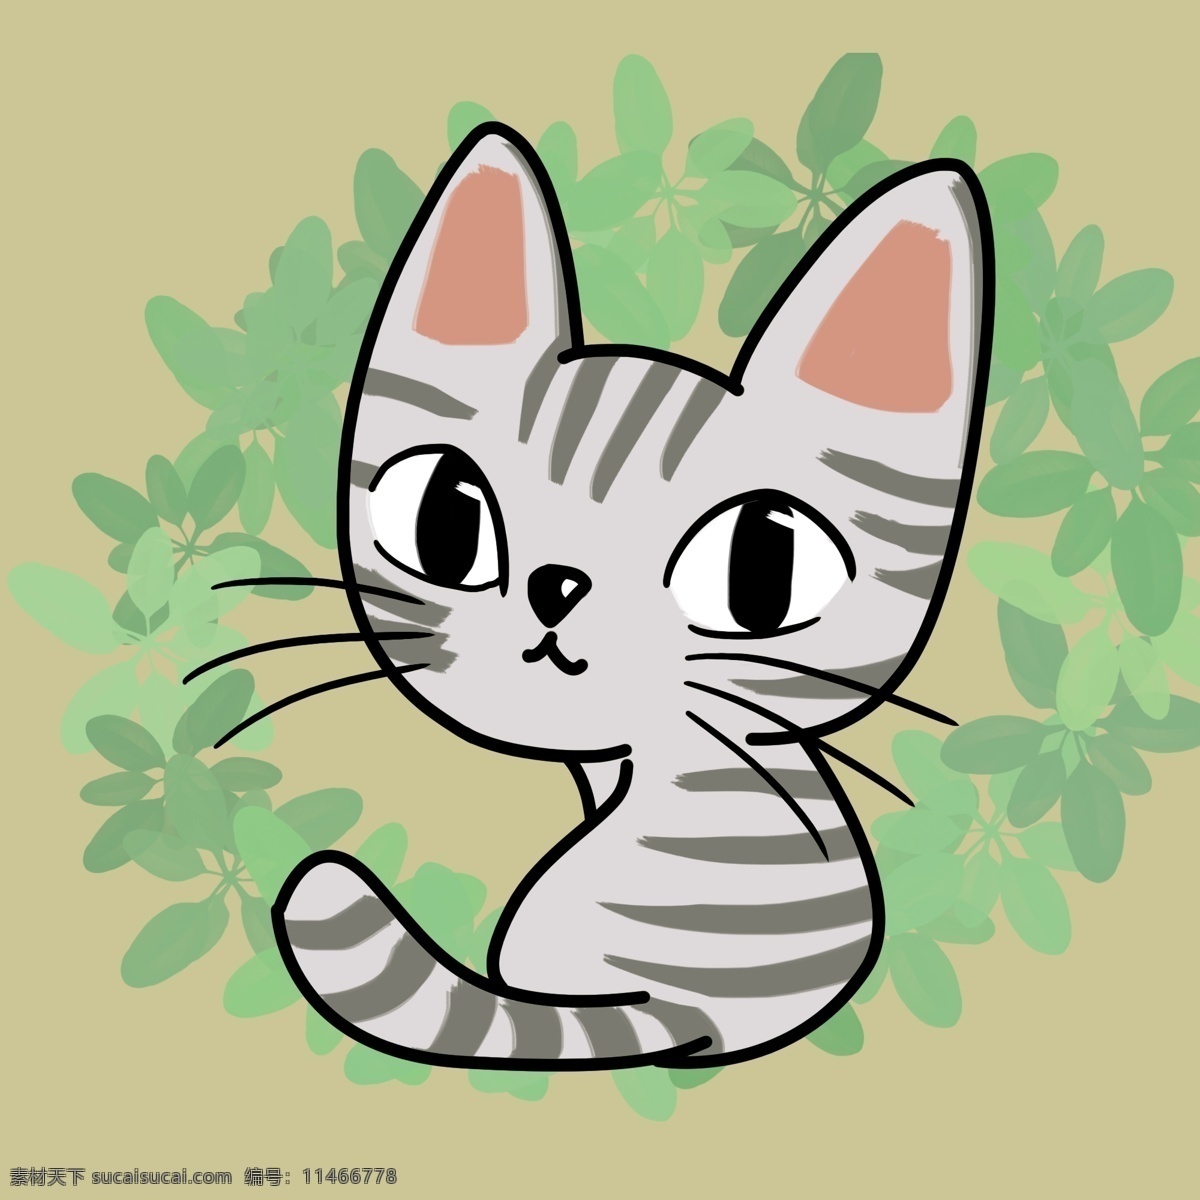 原创 元素 猫咪 转头 猫 小猫 可爱 绿色 萌 插画 q版 卡通 cat 背影 绿 动物 小动物 装饰 手机 手机壳